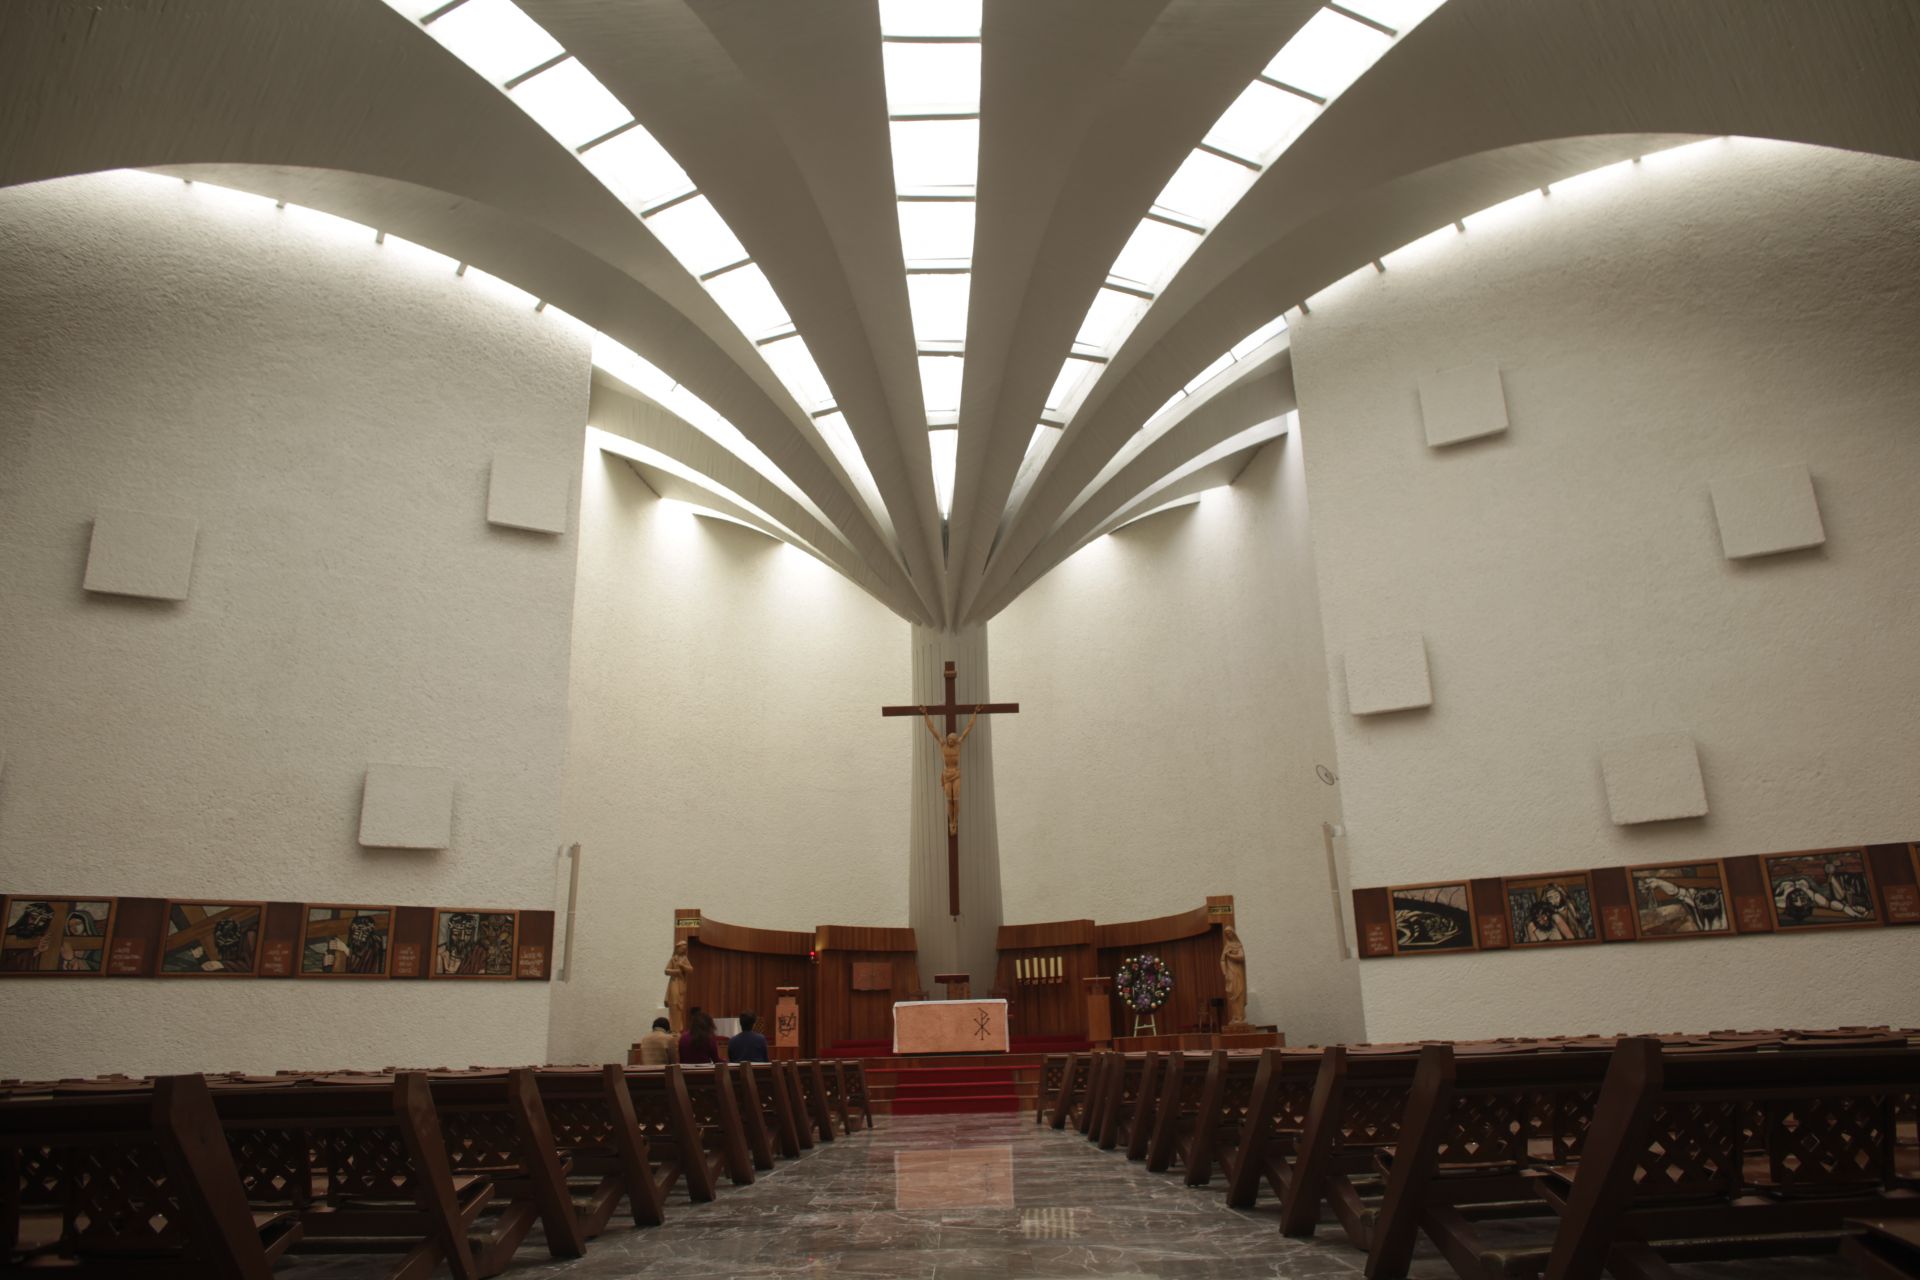 有機的なHPシェル構造の屋根が美しいフェリックス・キャンデラの「サンタ・モニカ教会」を訪問。